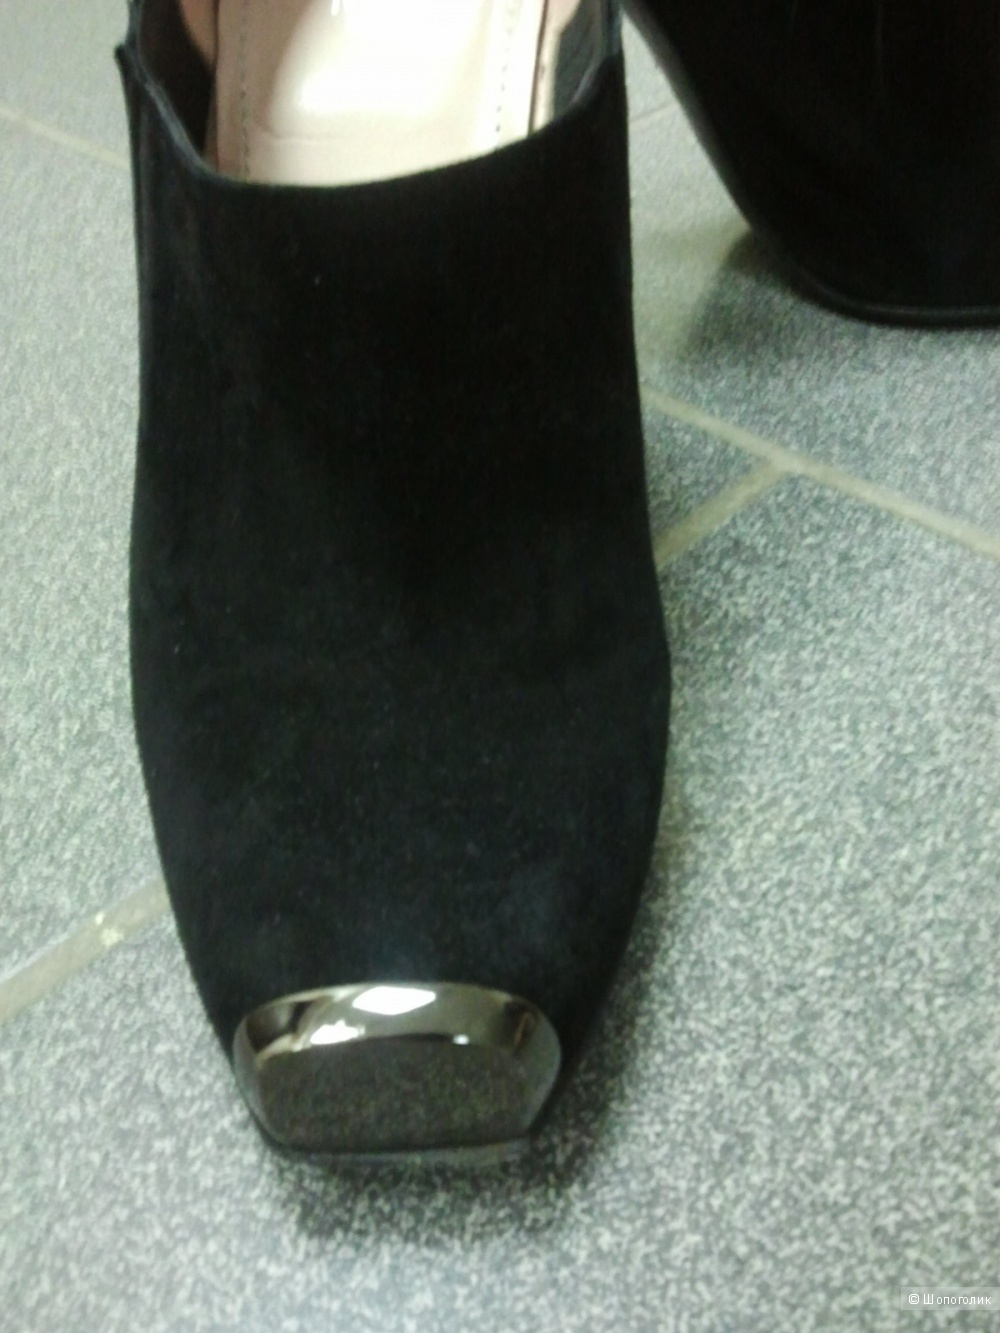 Туфли Nando Muzi (Италия)замшевые,черные,размер 37.5